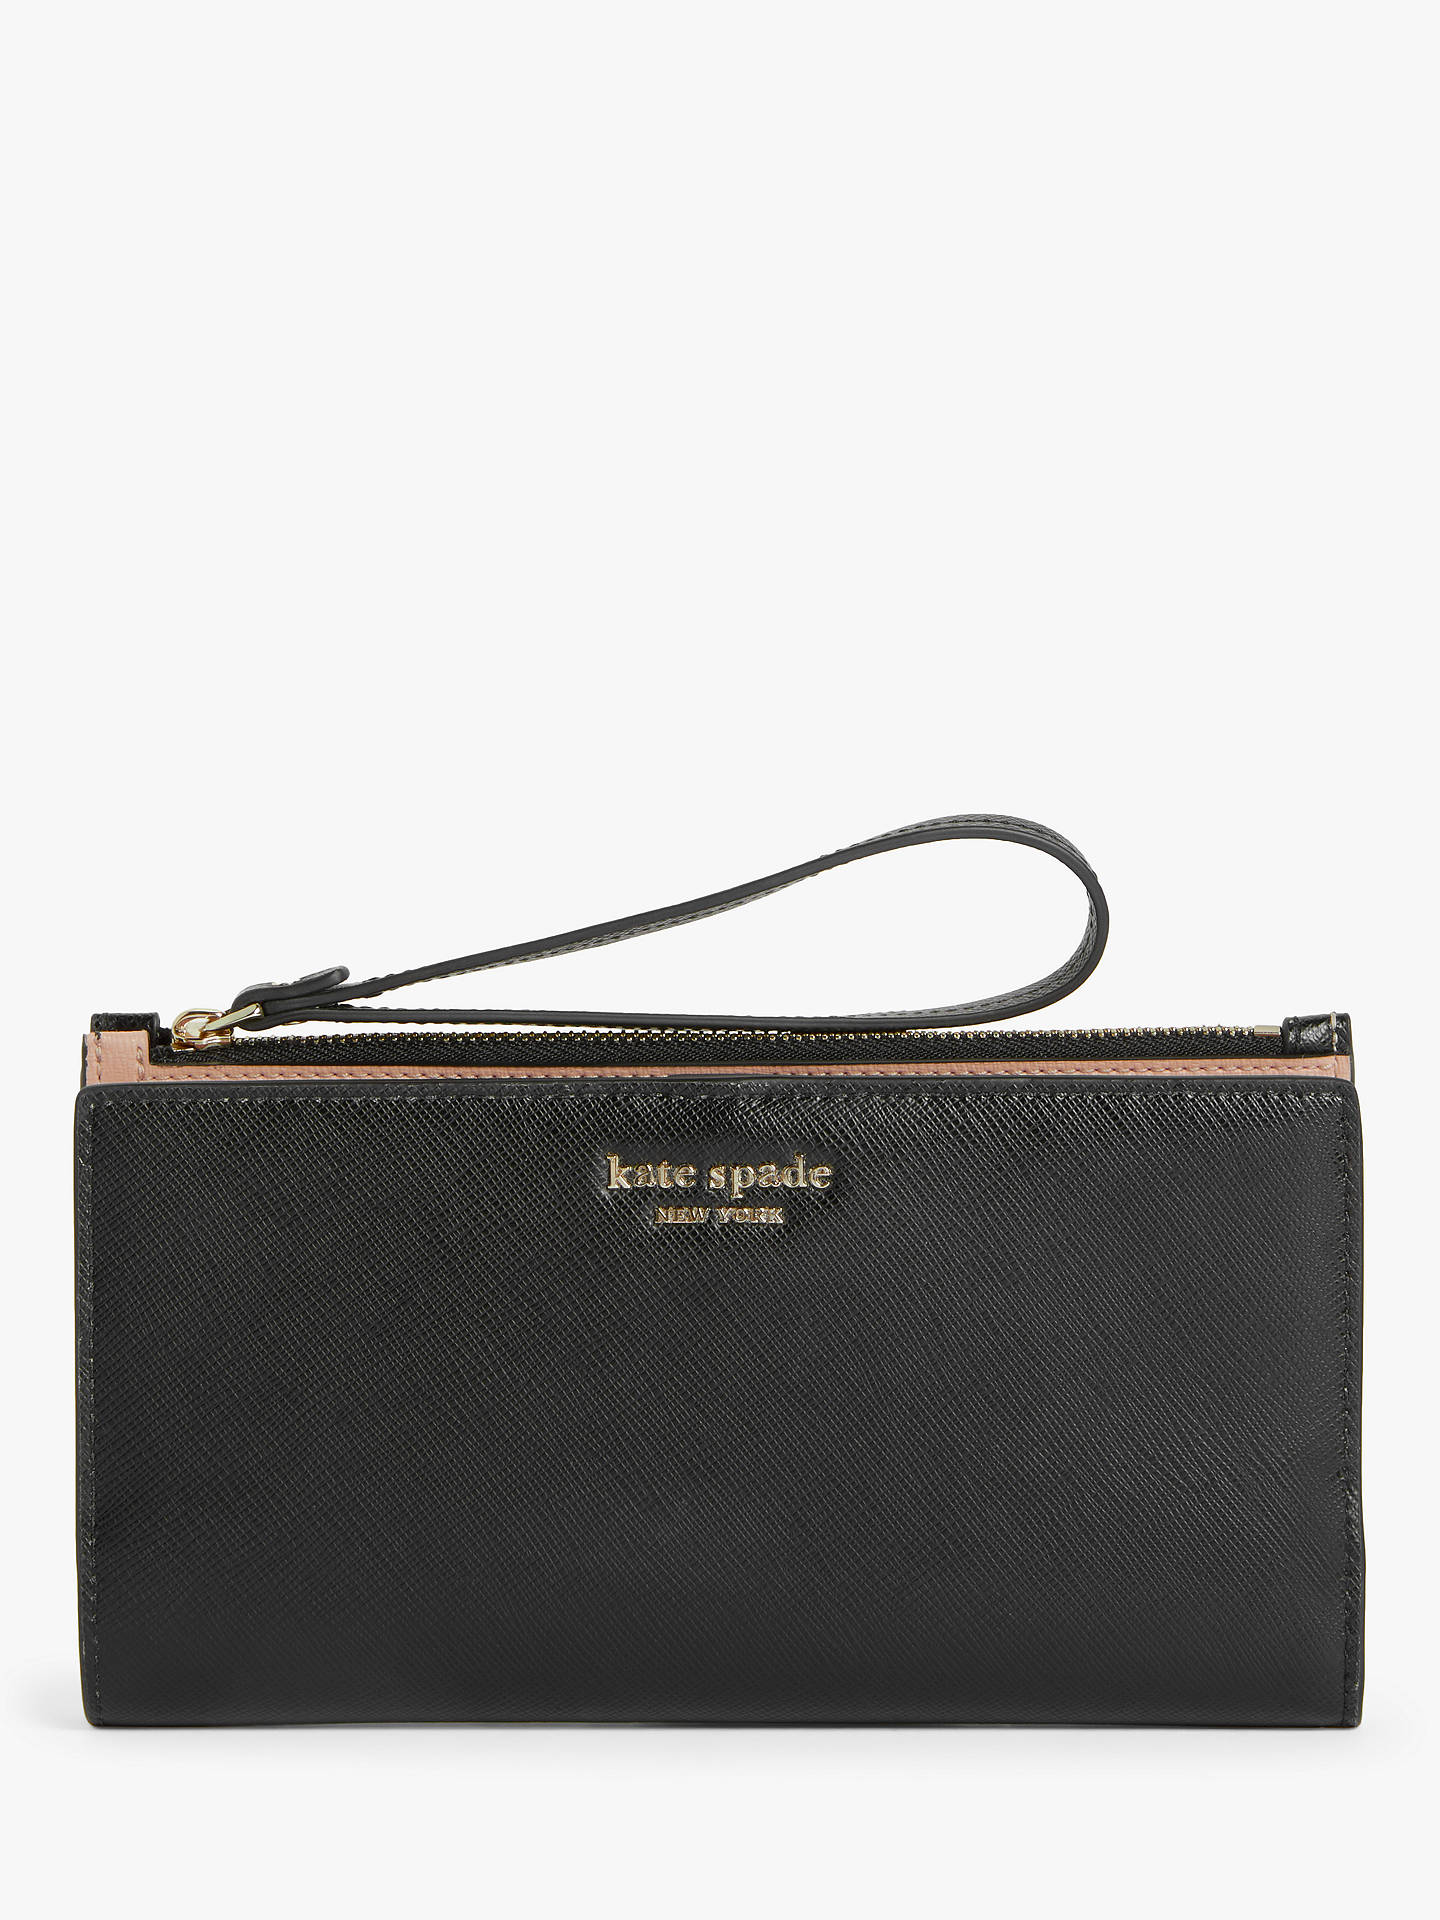 Kate Spade New York Wristlet Handbags For Women | semashow.com